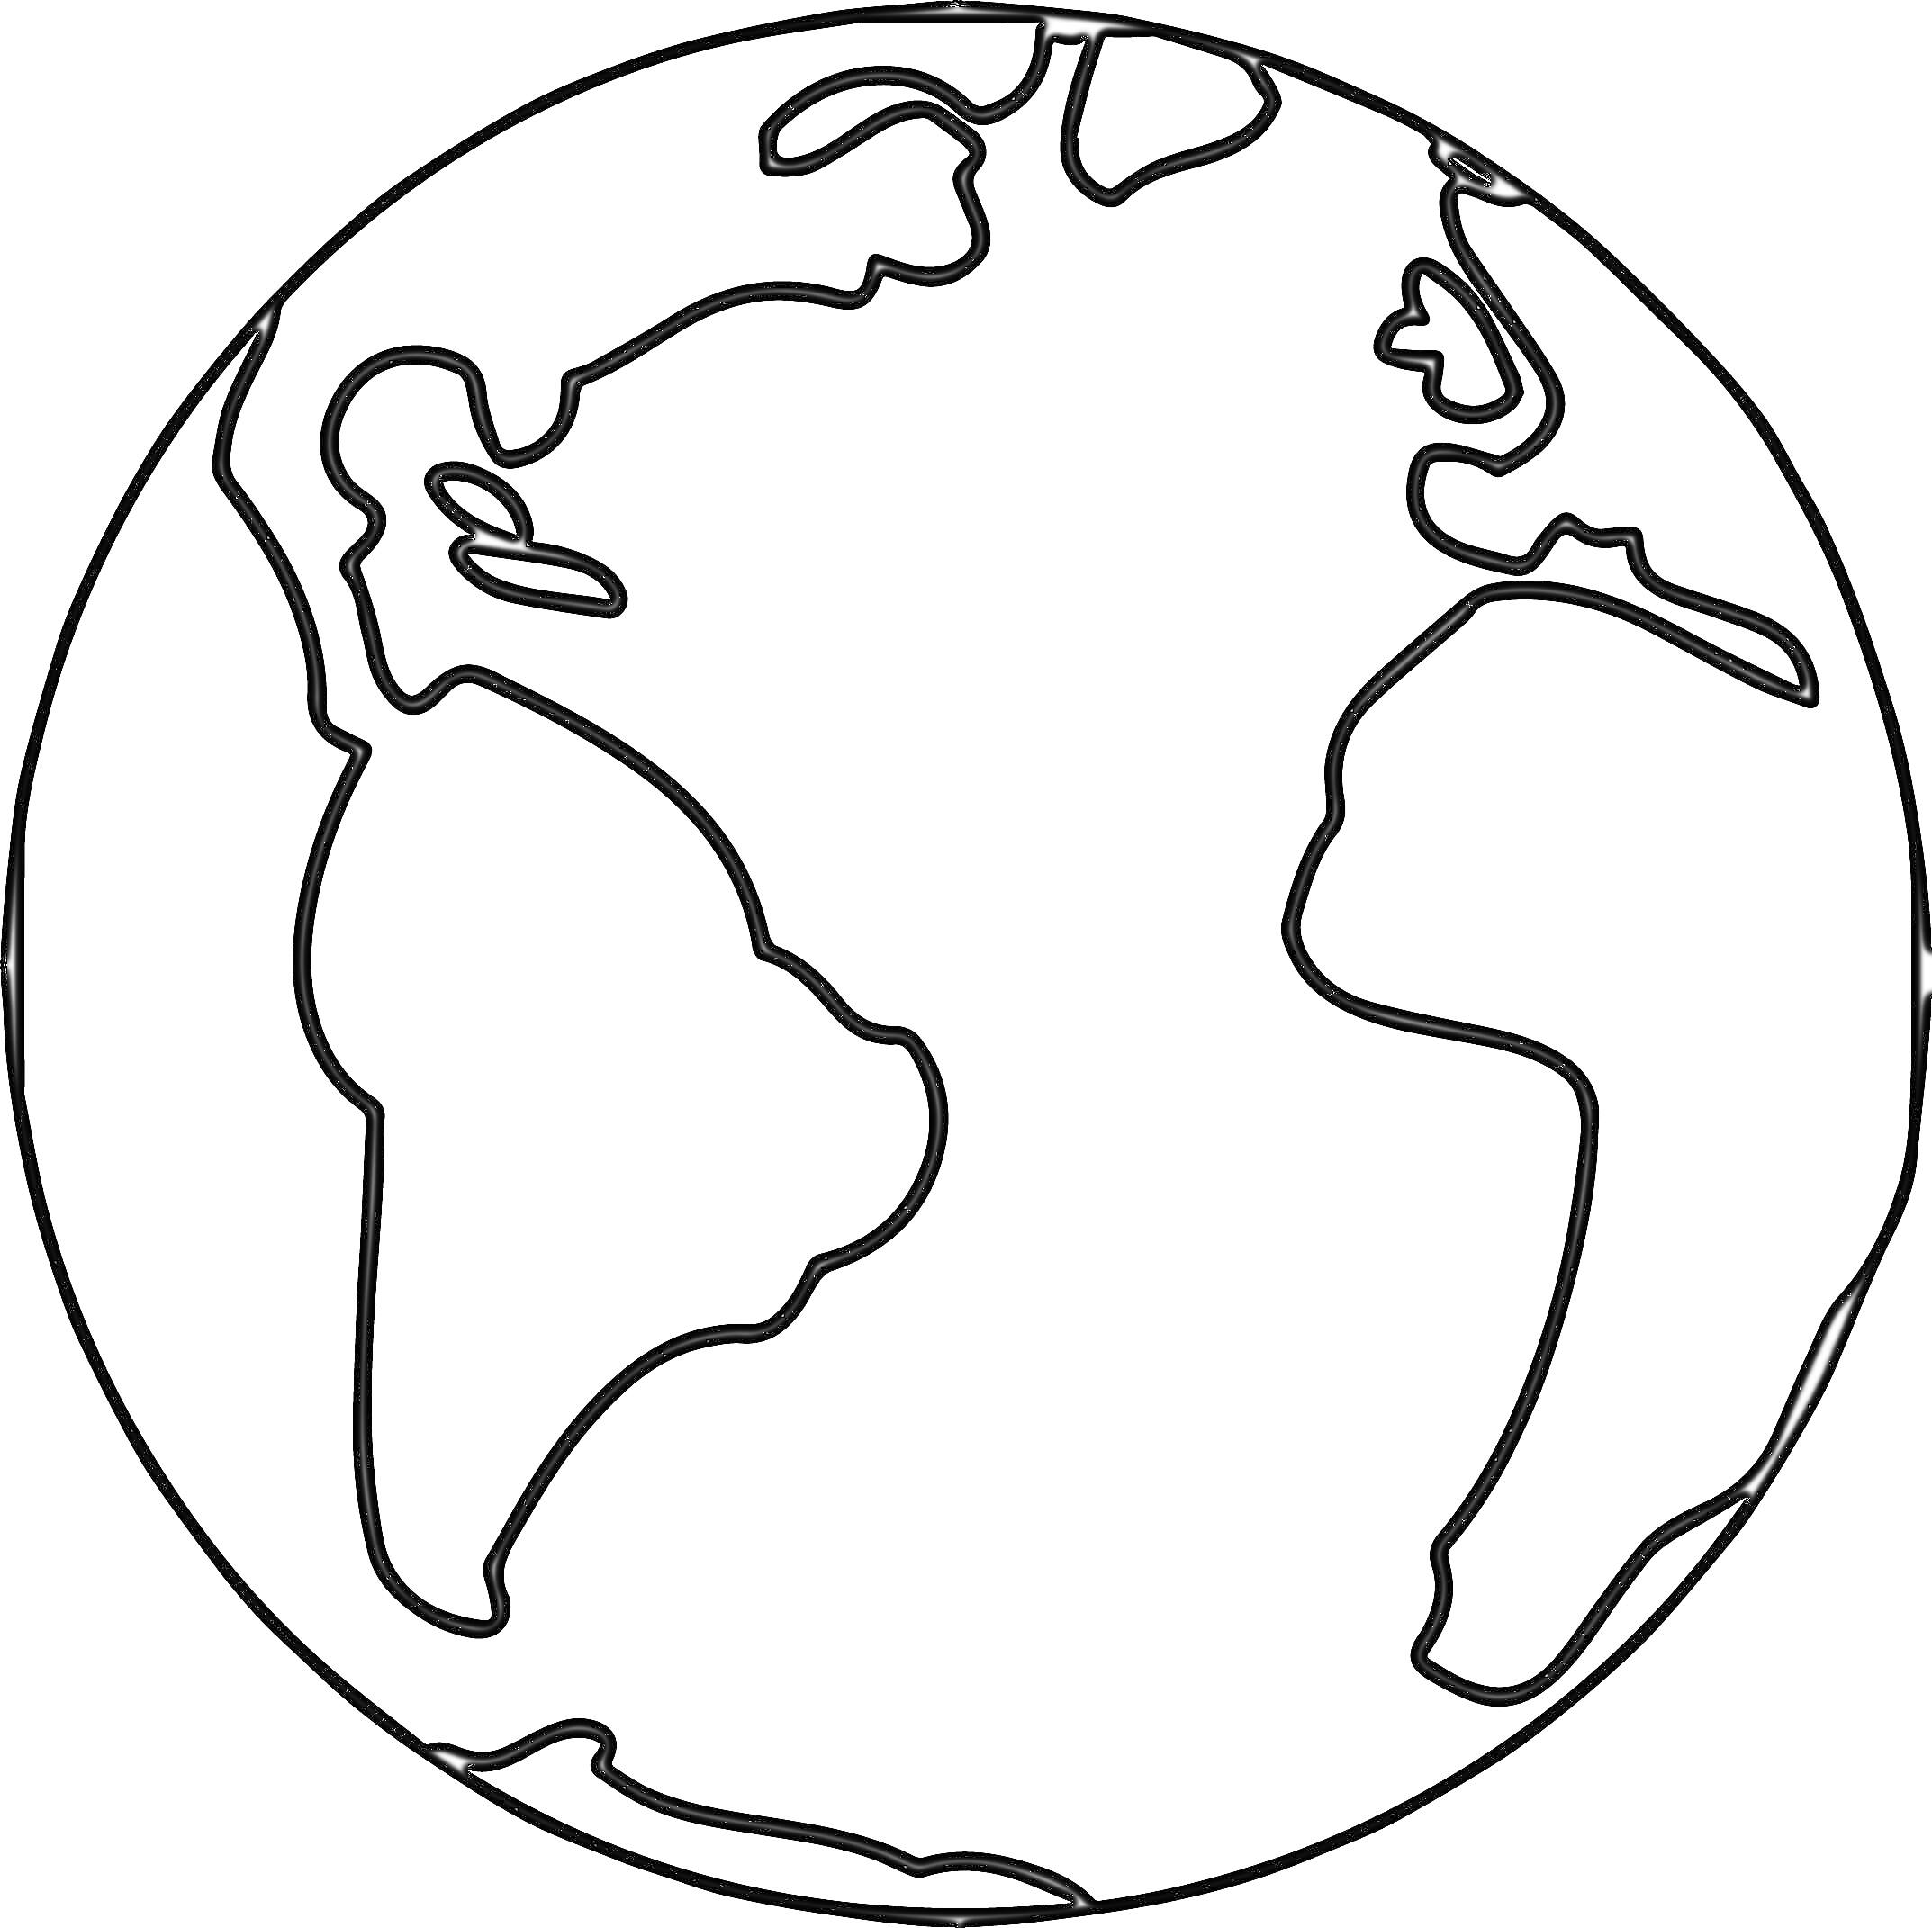 Раскраска Земной шар с континентами Африки, Южной Америки и частично Северной Америки и Европы